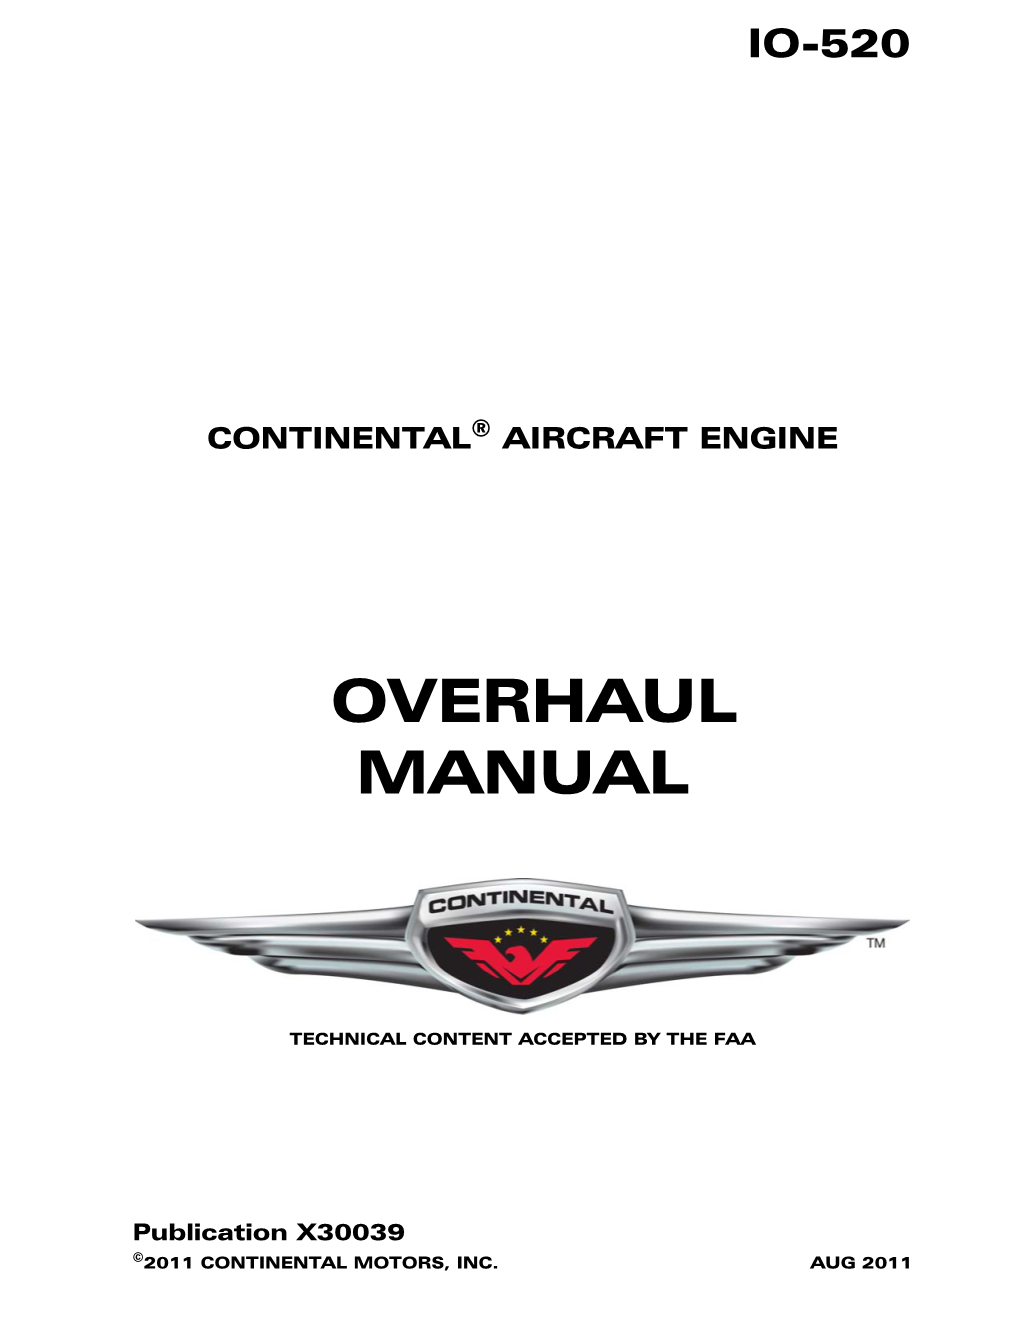 IO-520 Overhaul Manual